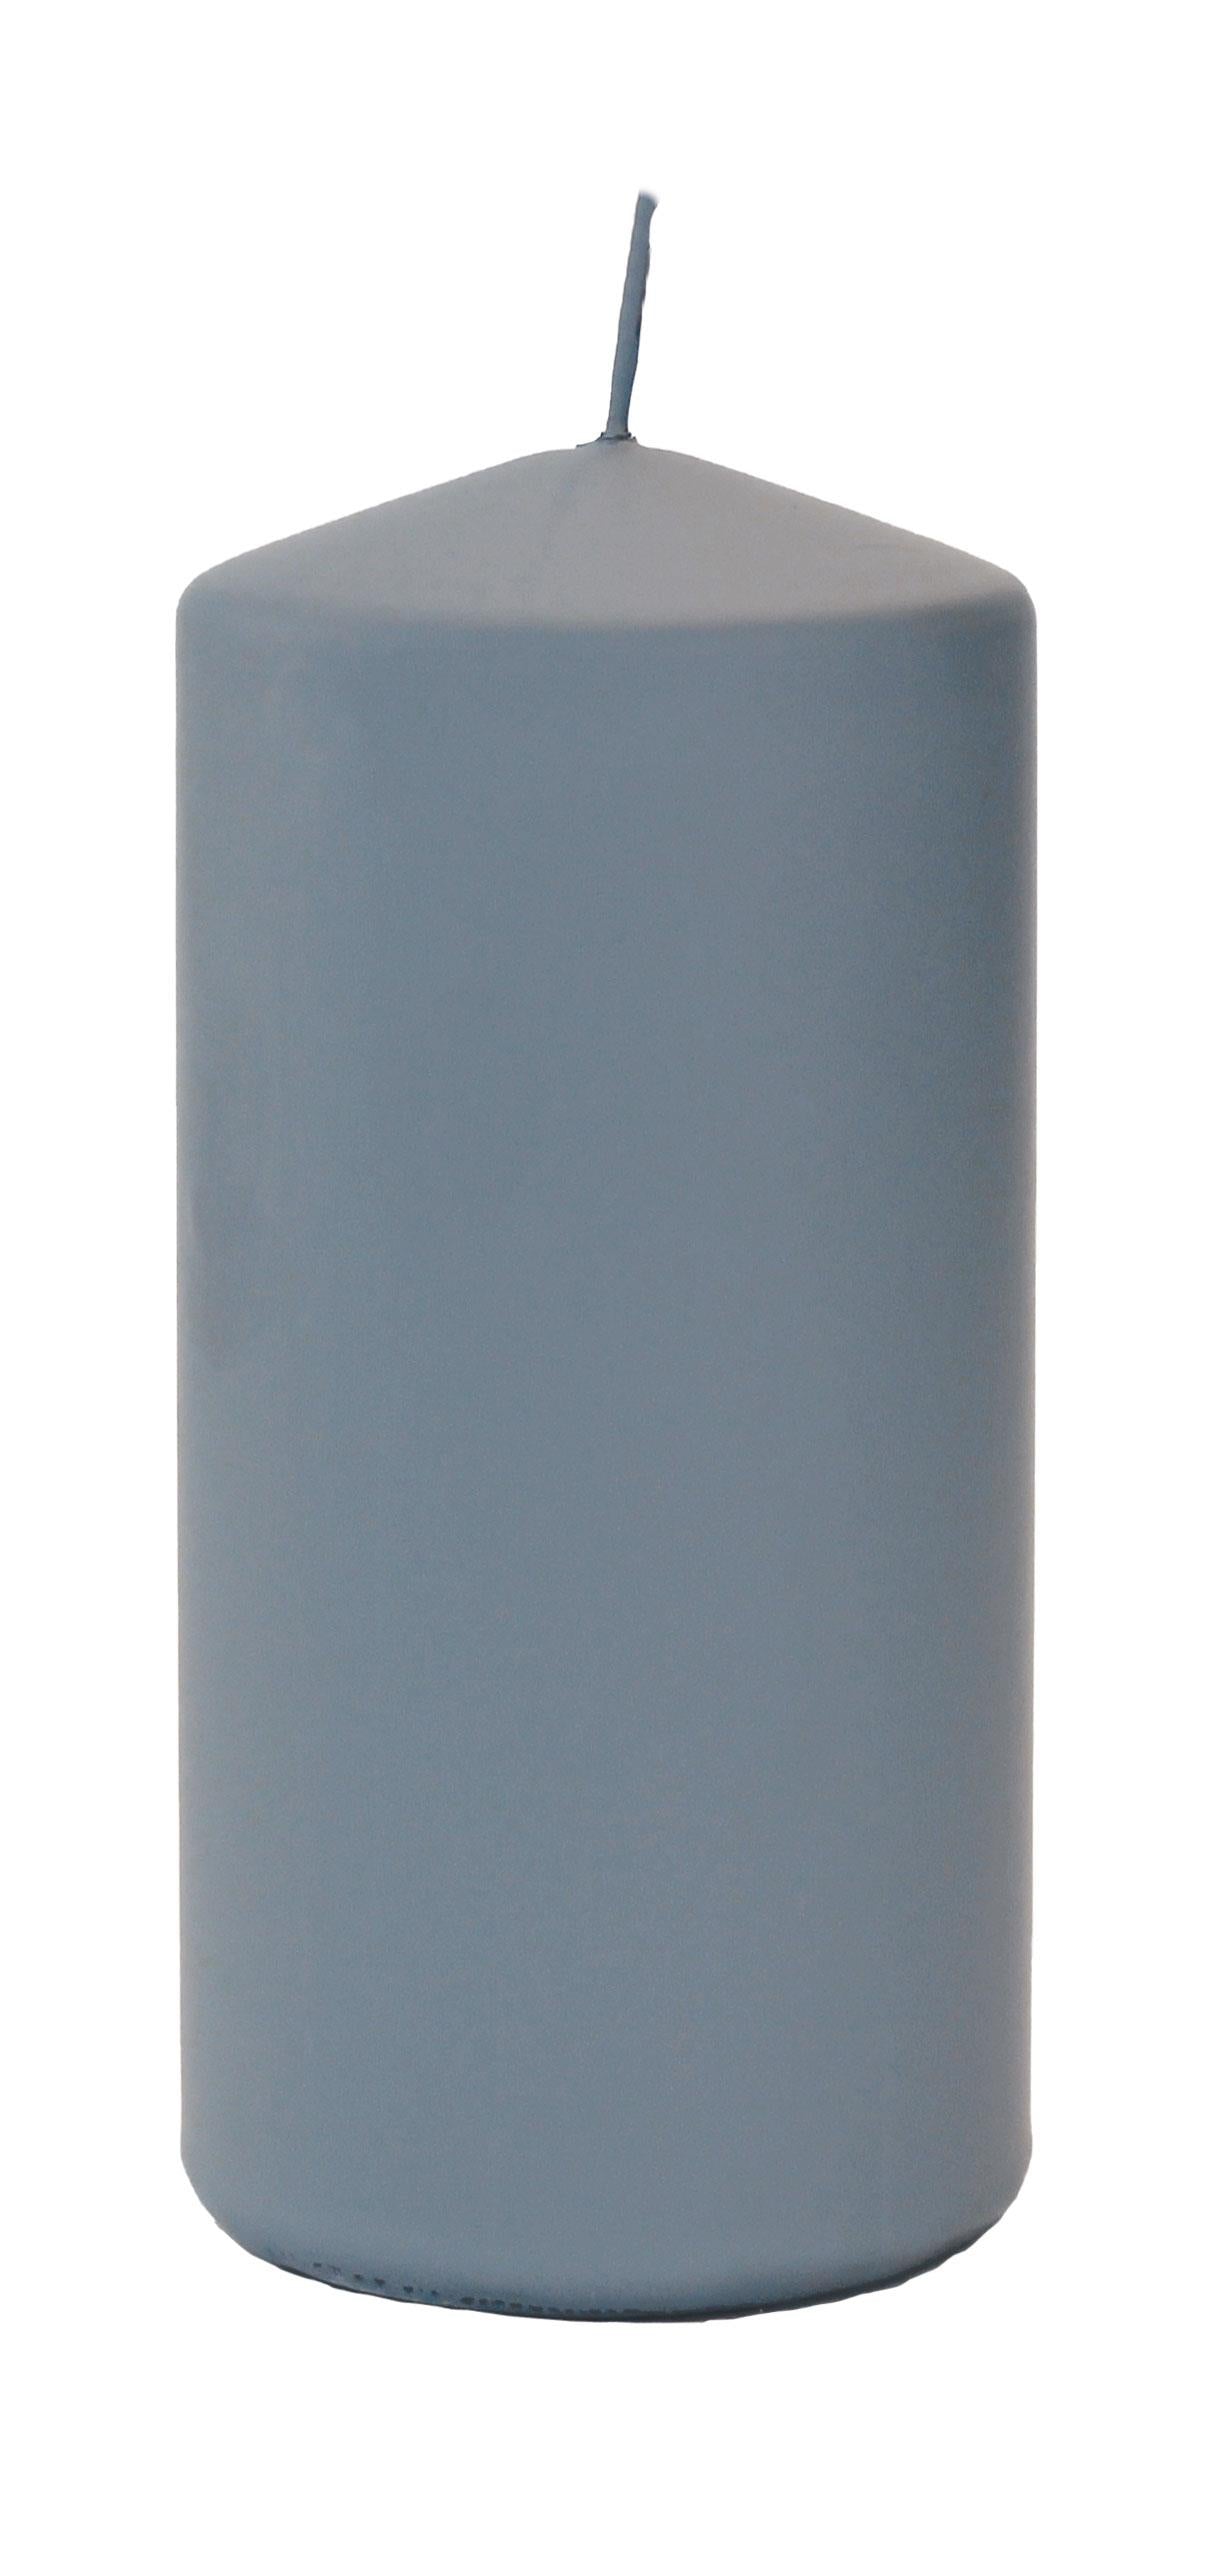 4x Flachkopfkerze Frosted Pastel 150/70mm (Grau)